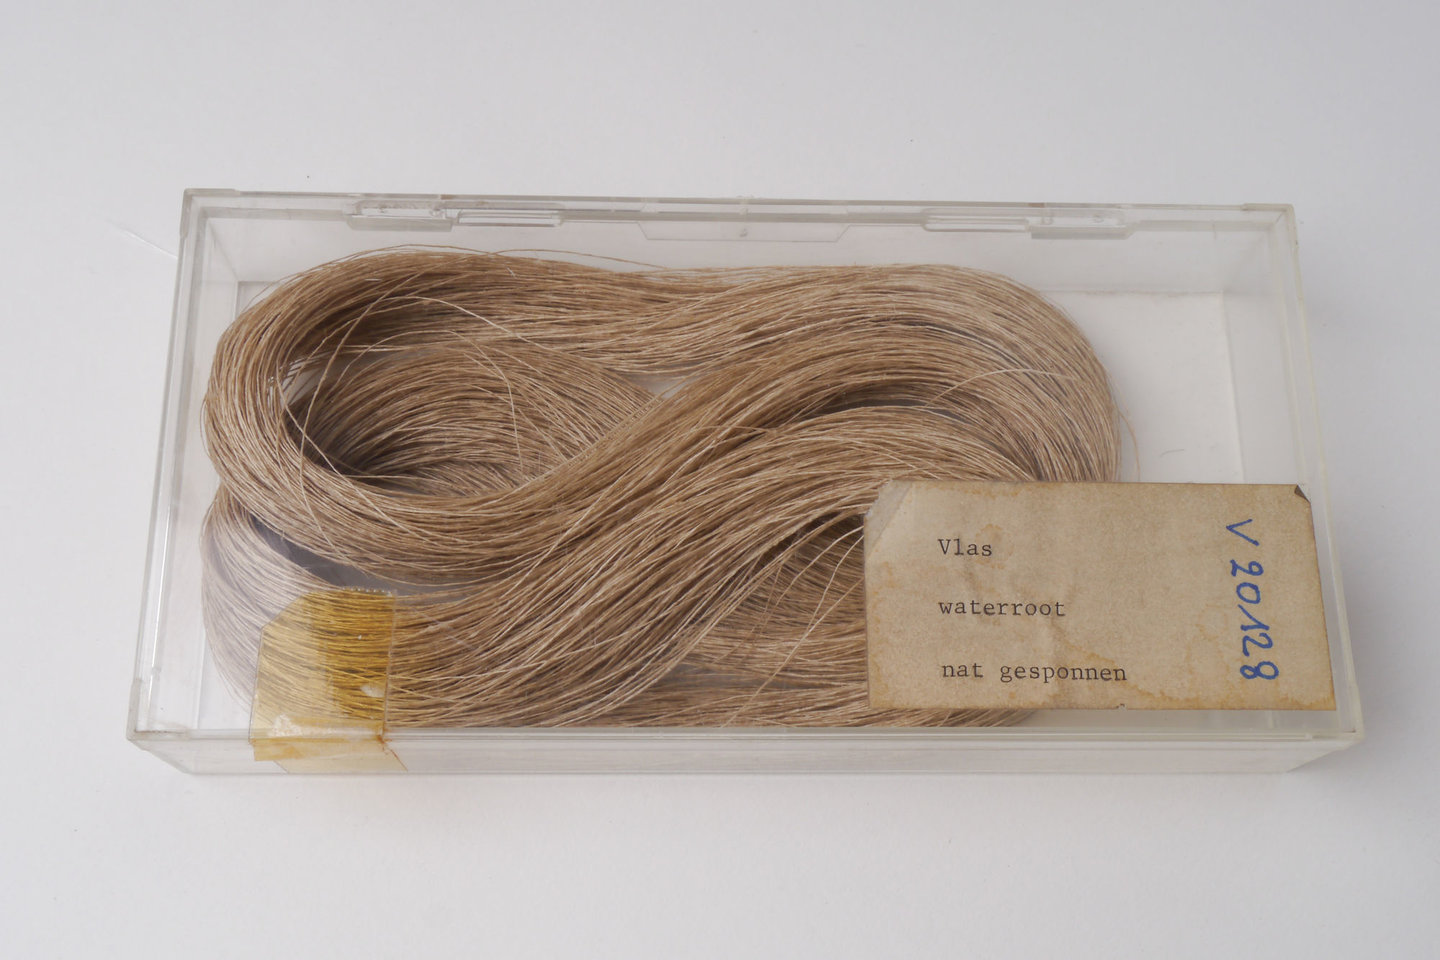 Staal van nat gesponnen vlas (waterroot)